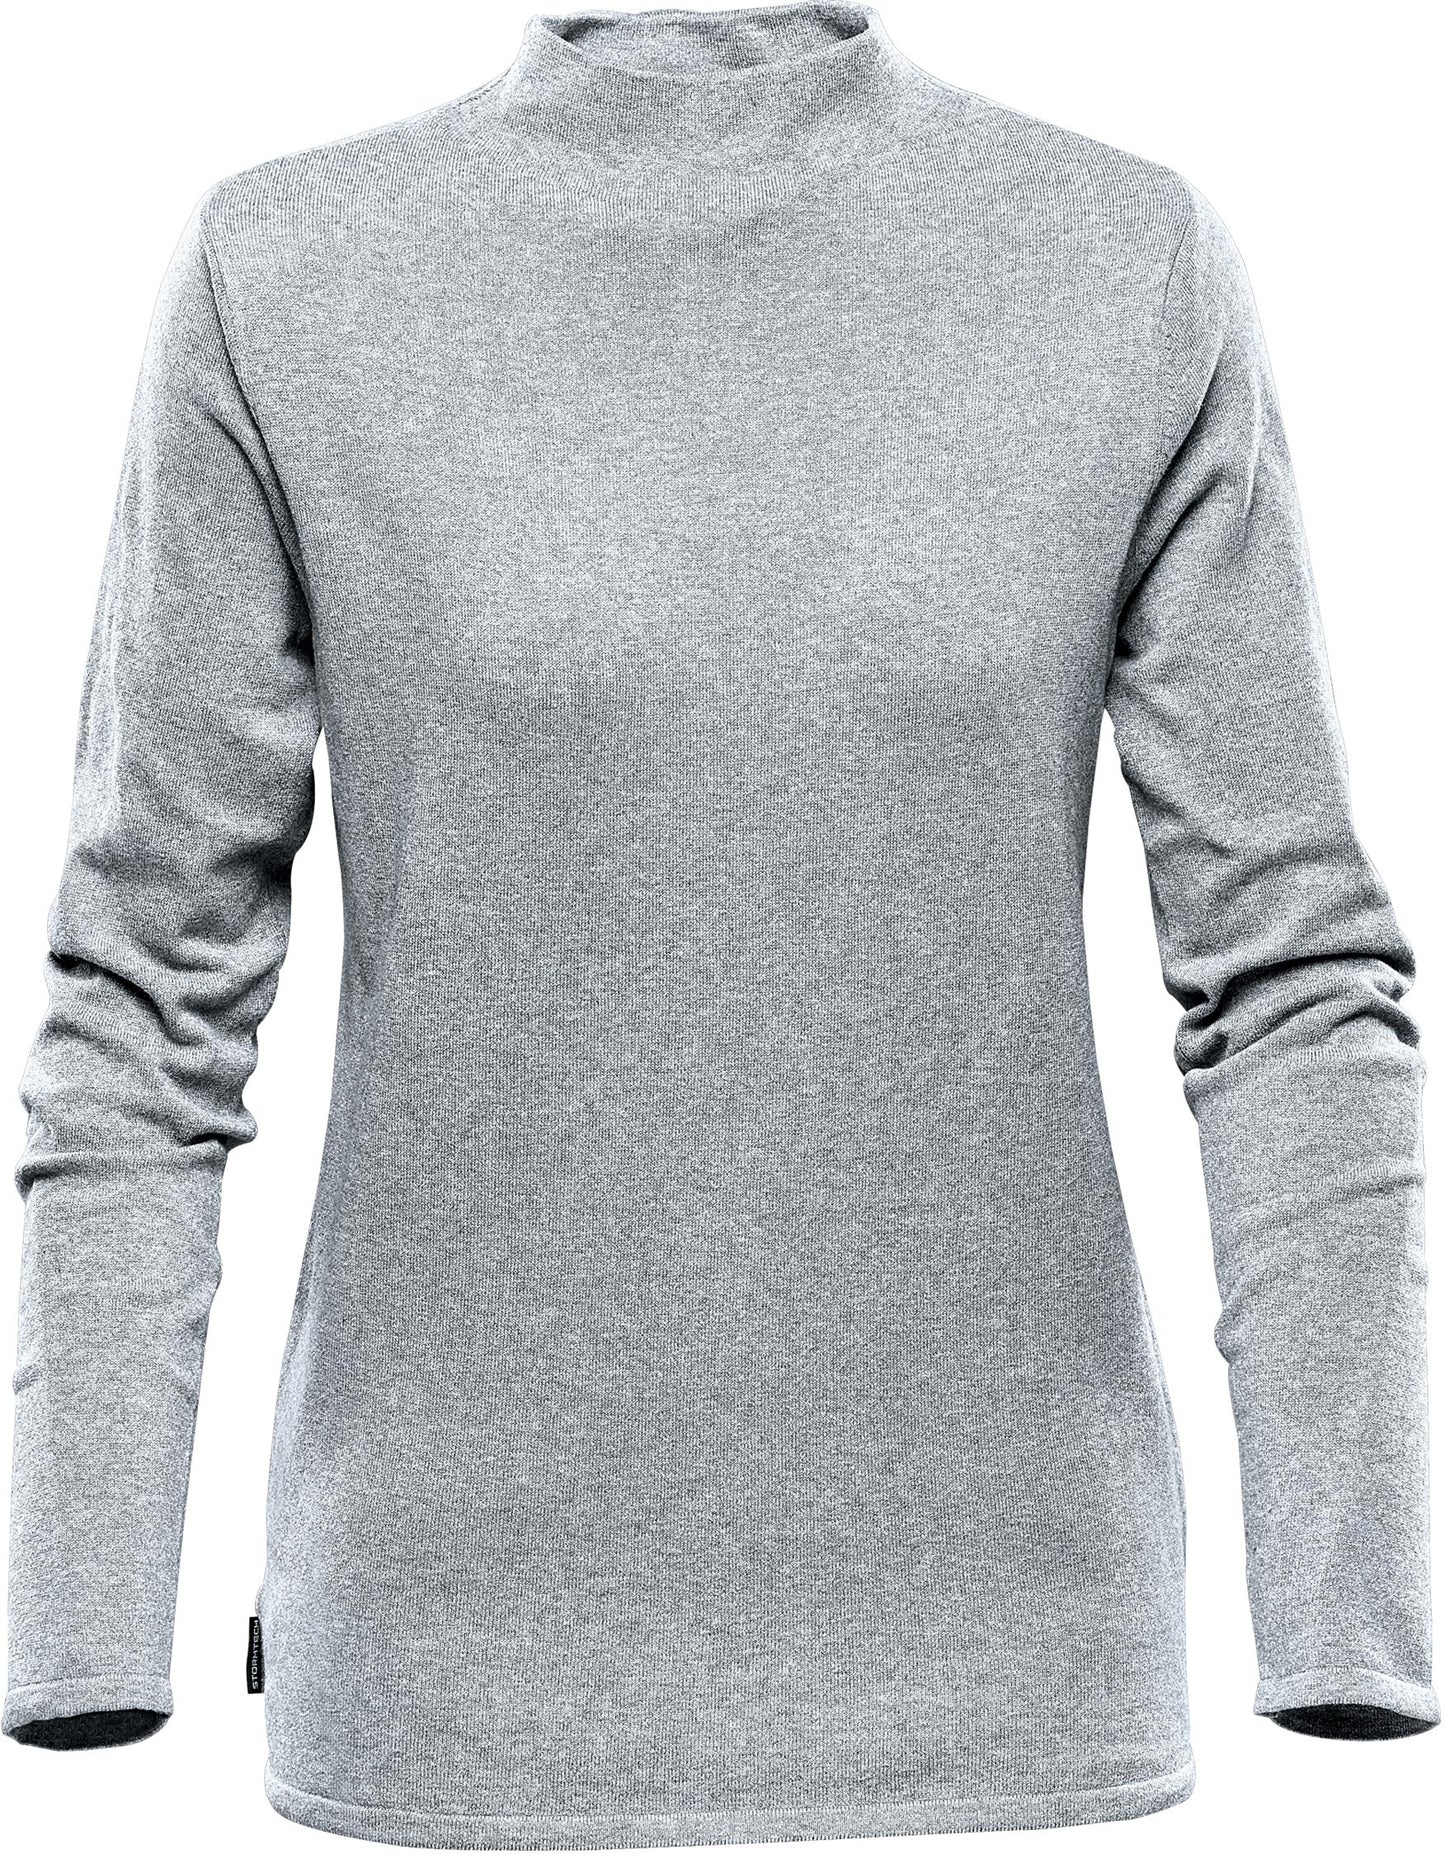 Women's Urban Sweater - shoppe list